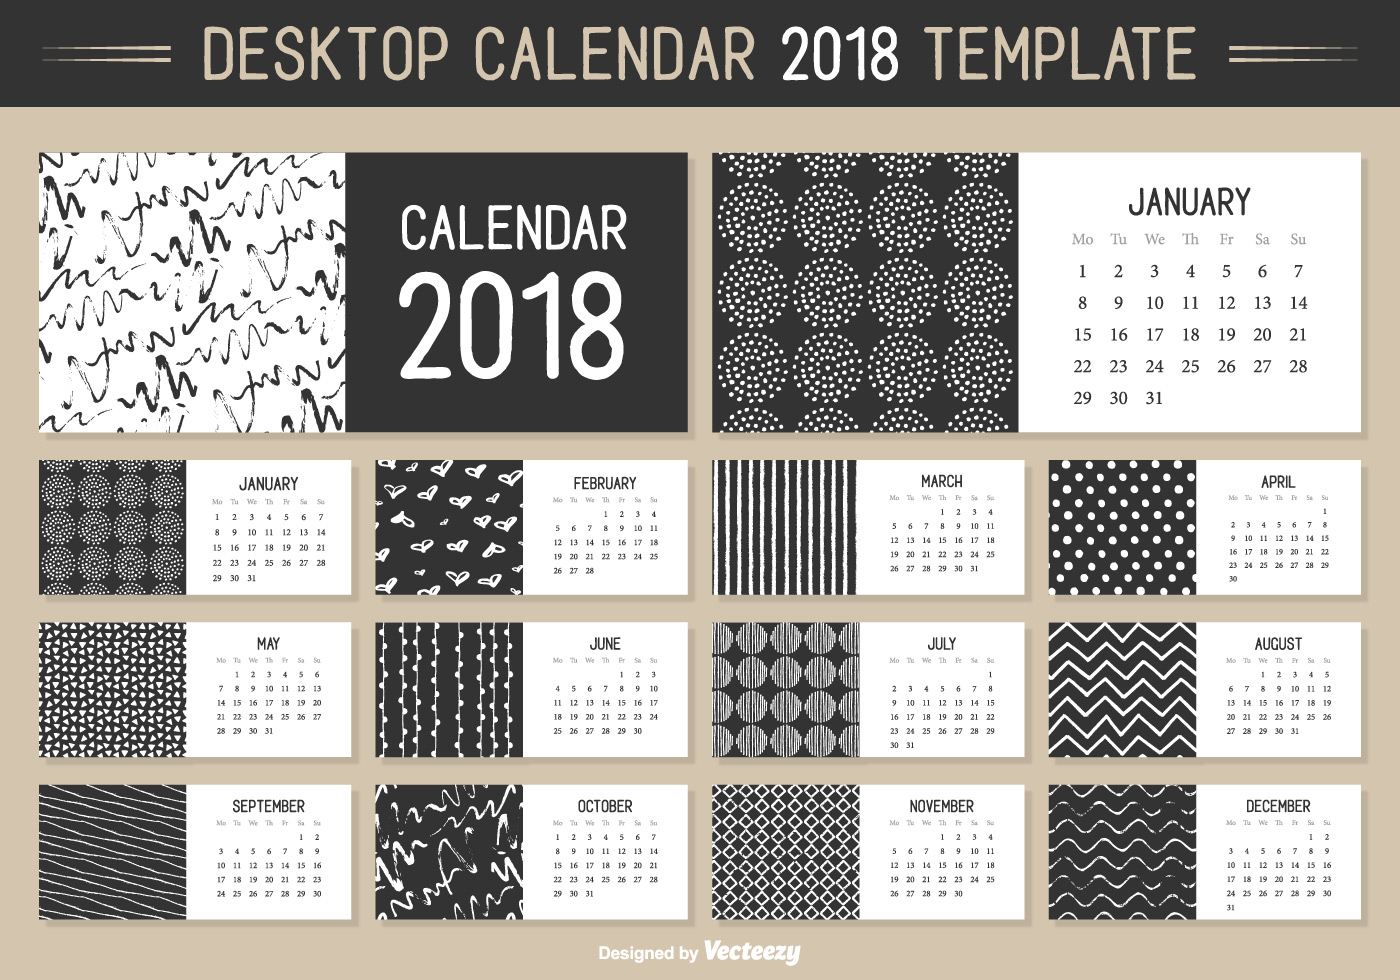 Monthly Desktop Calendar 2018 Vector Template   Download